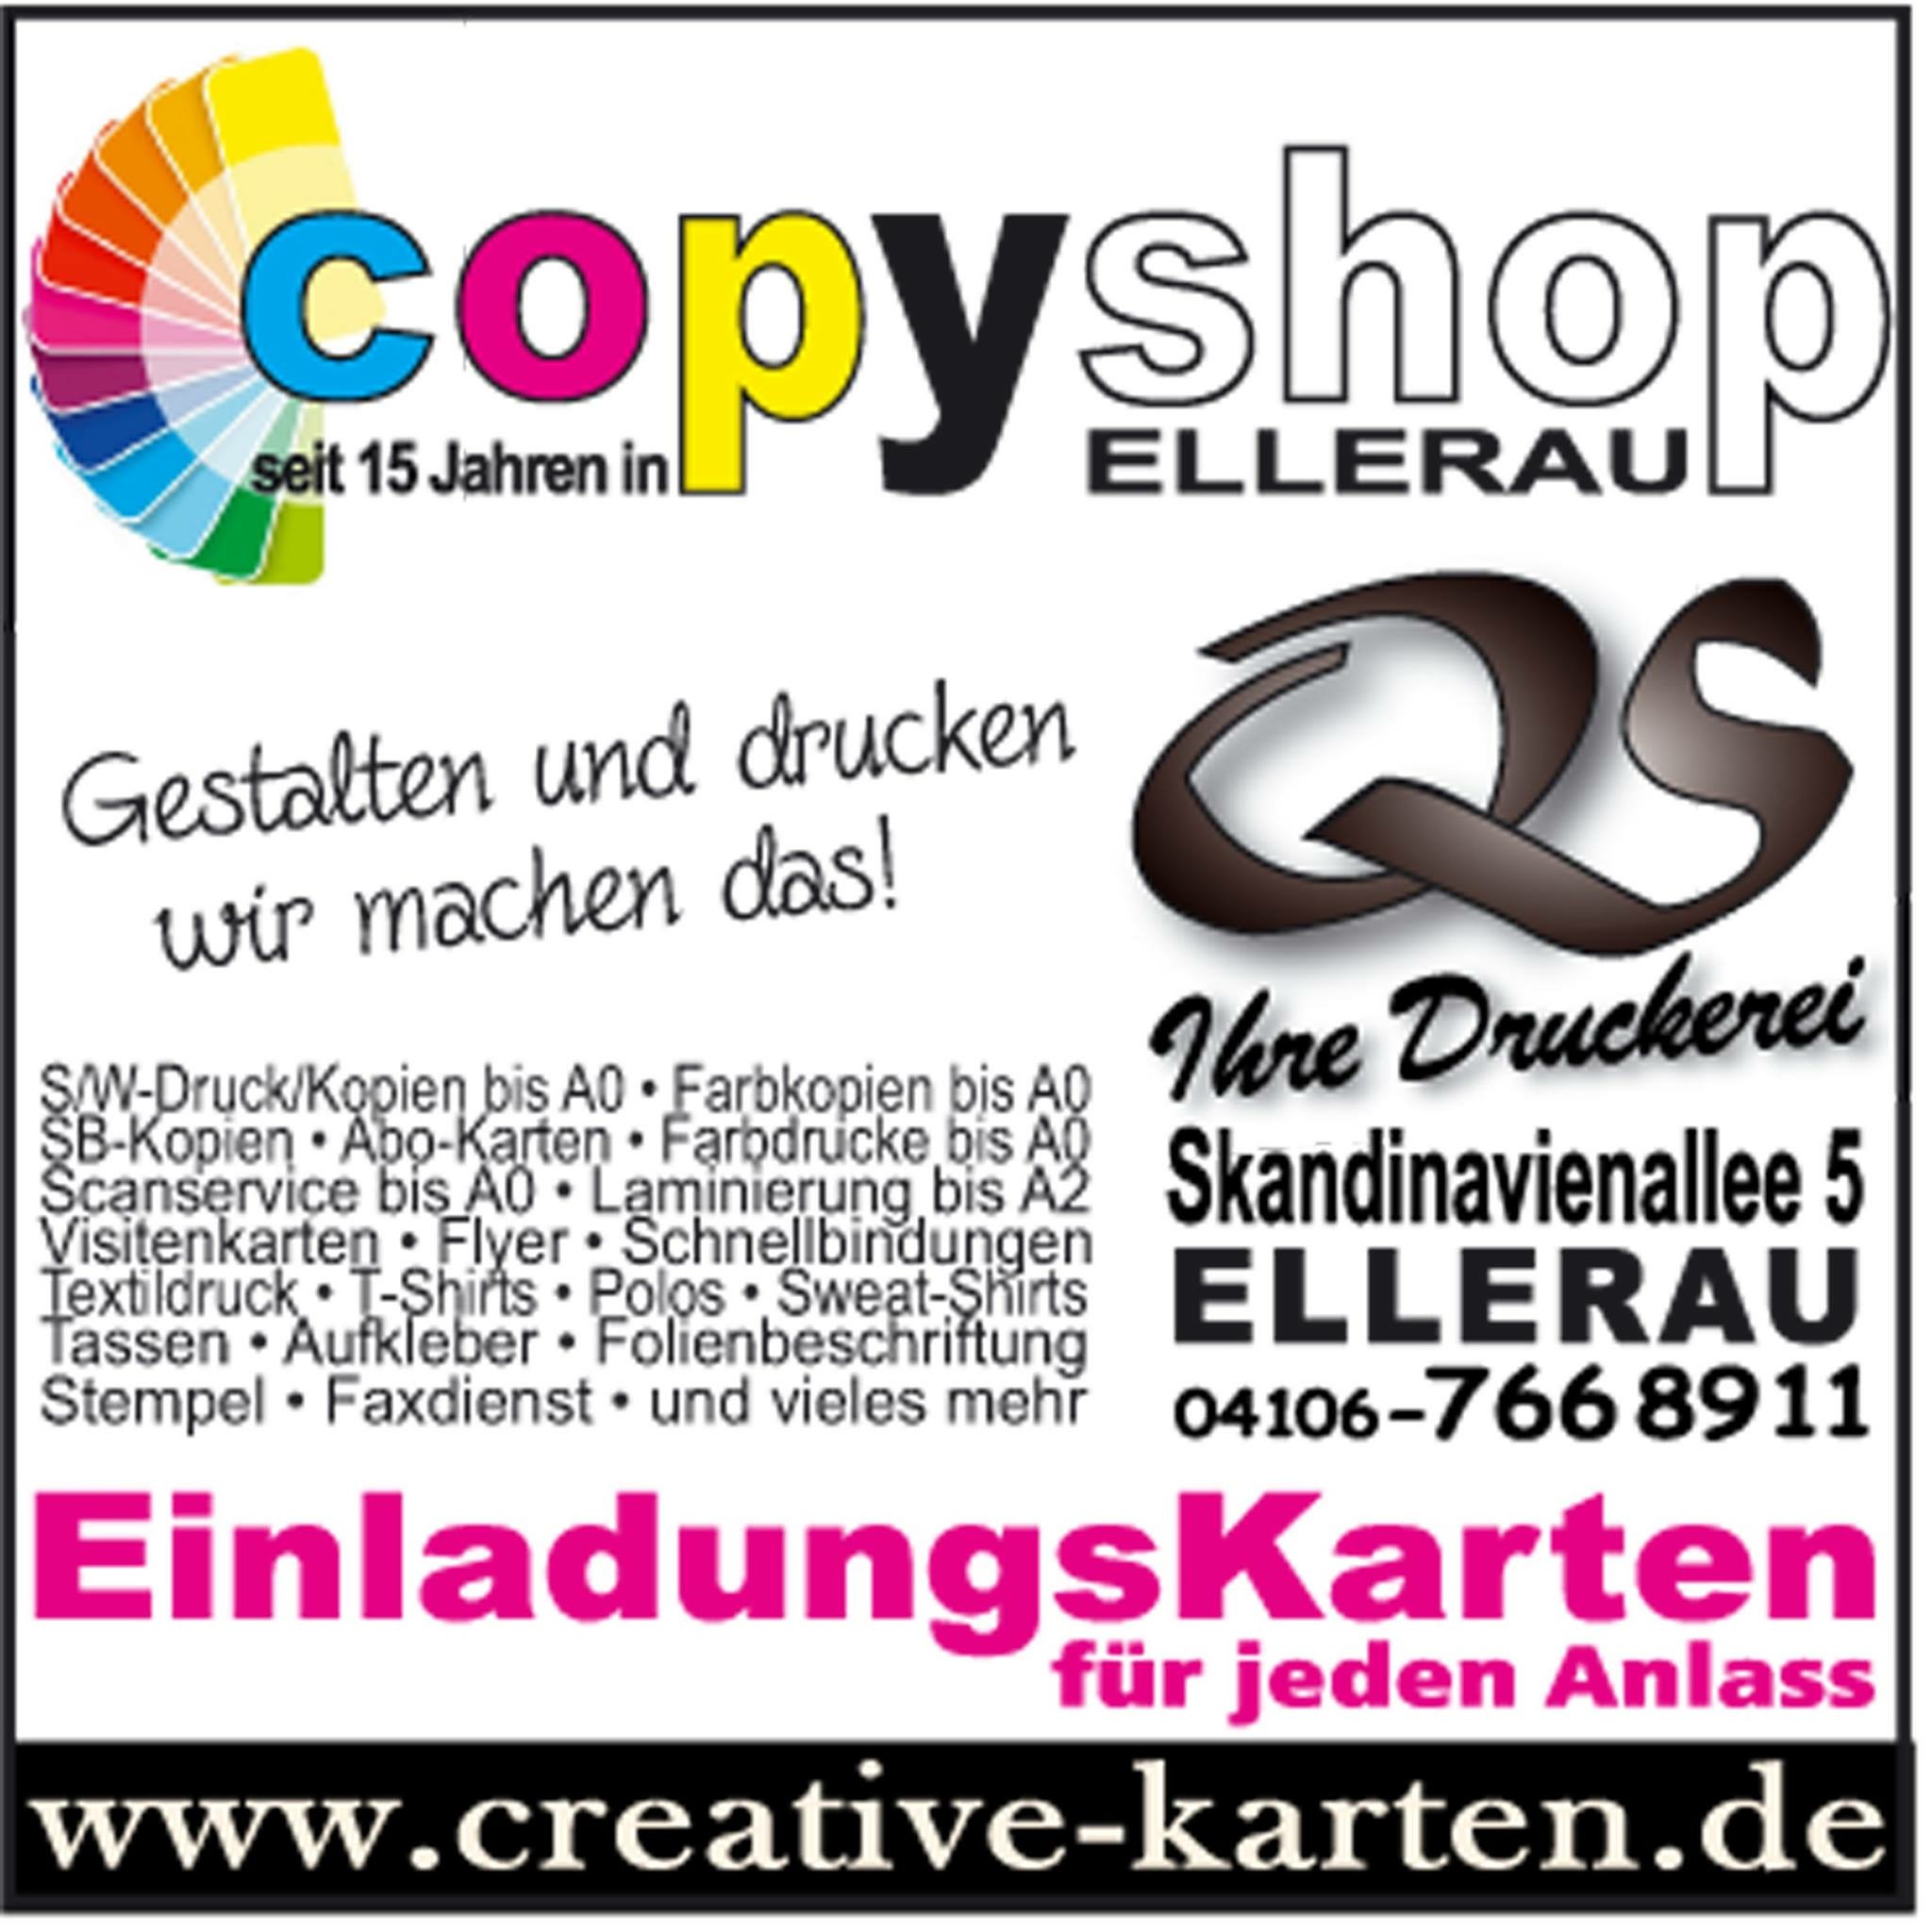 Copyshop in Ellerau bietet Einladungskarten, Visitenkarten, Flyer und Plakate inklusive Design zu fairen Preisen. Kopien und Ausdrucke bis DIN A0